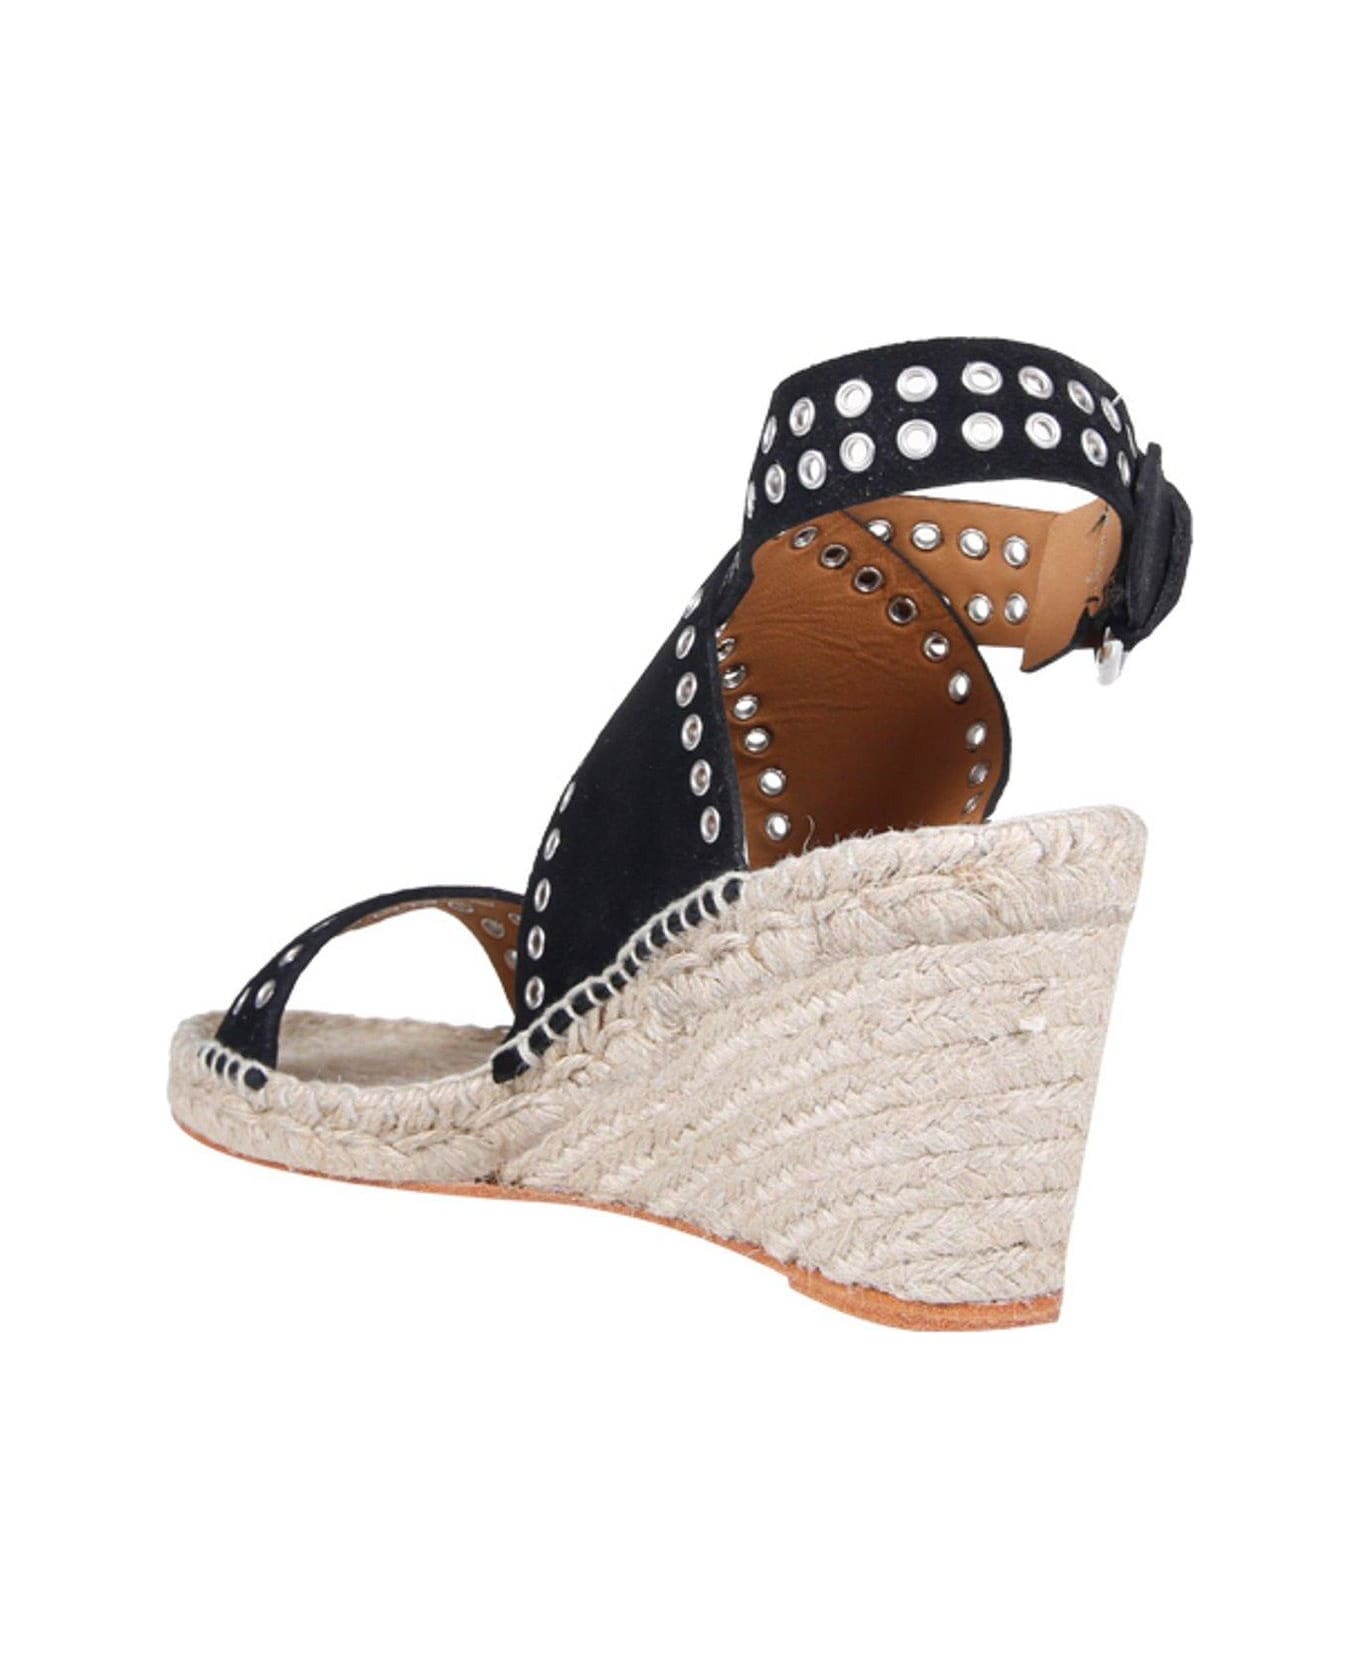 Isabel Marant Open Toe Platform Wedge Sandals - Black